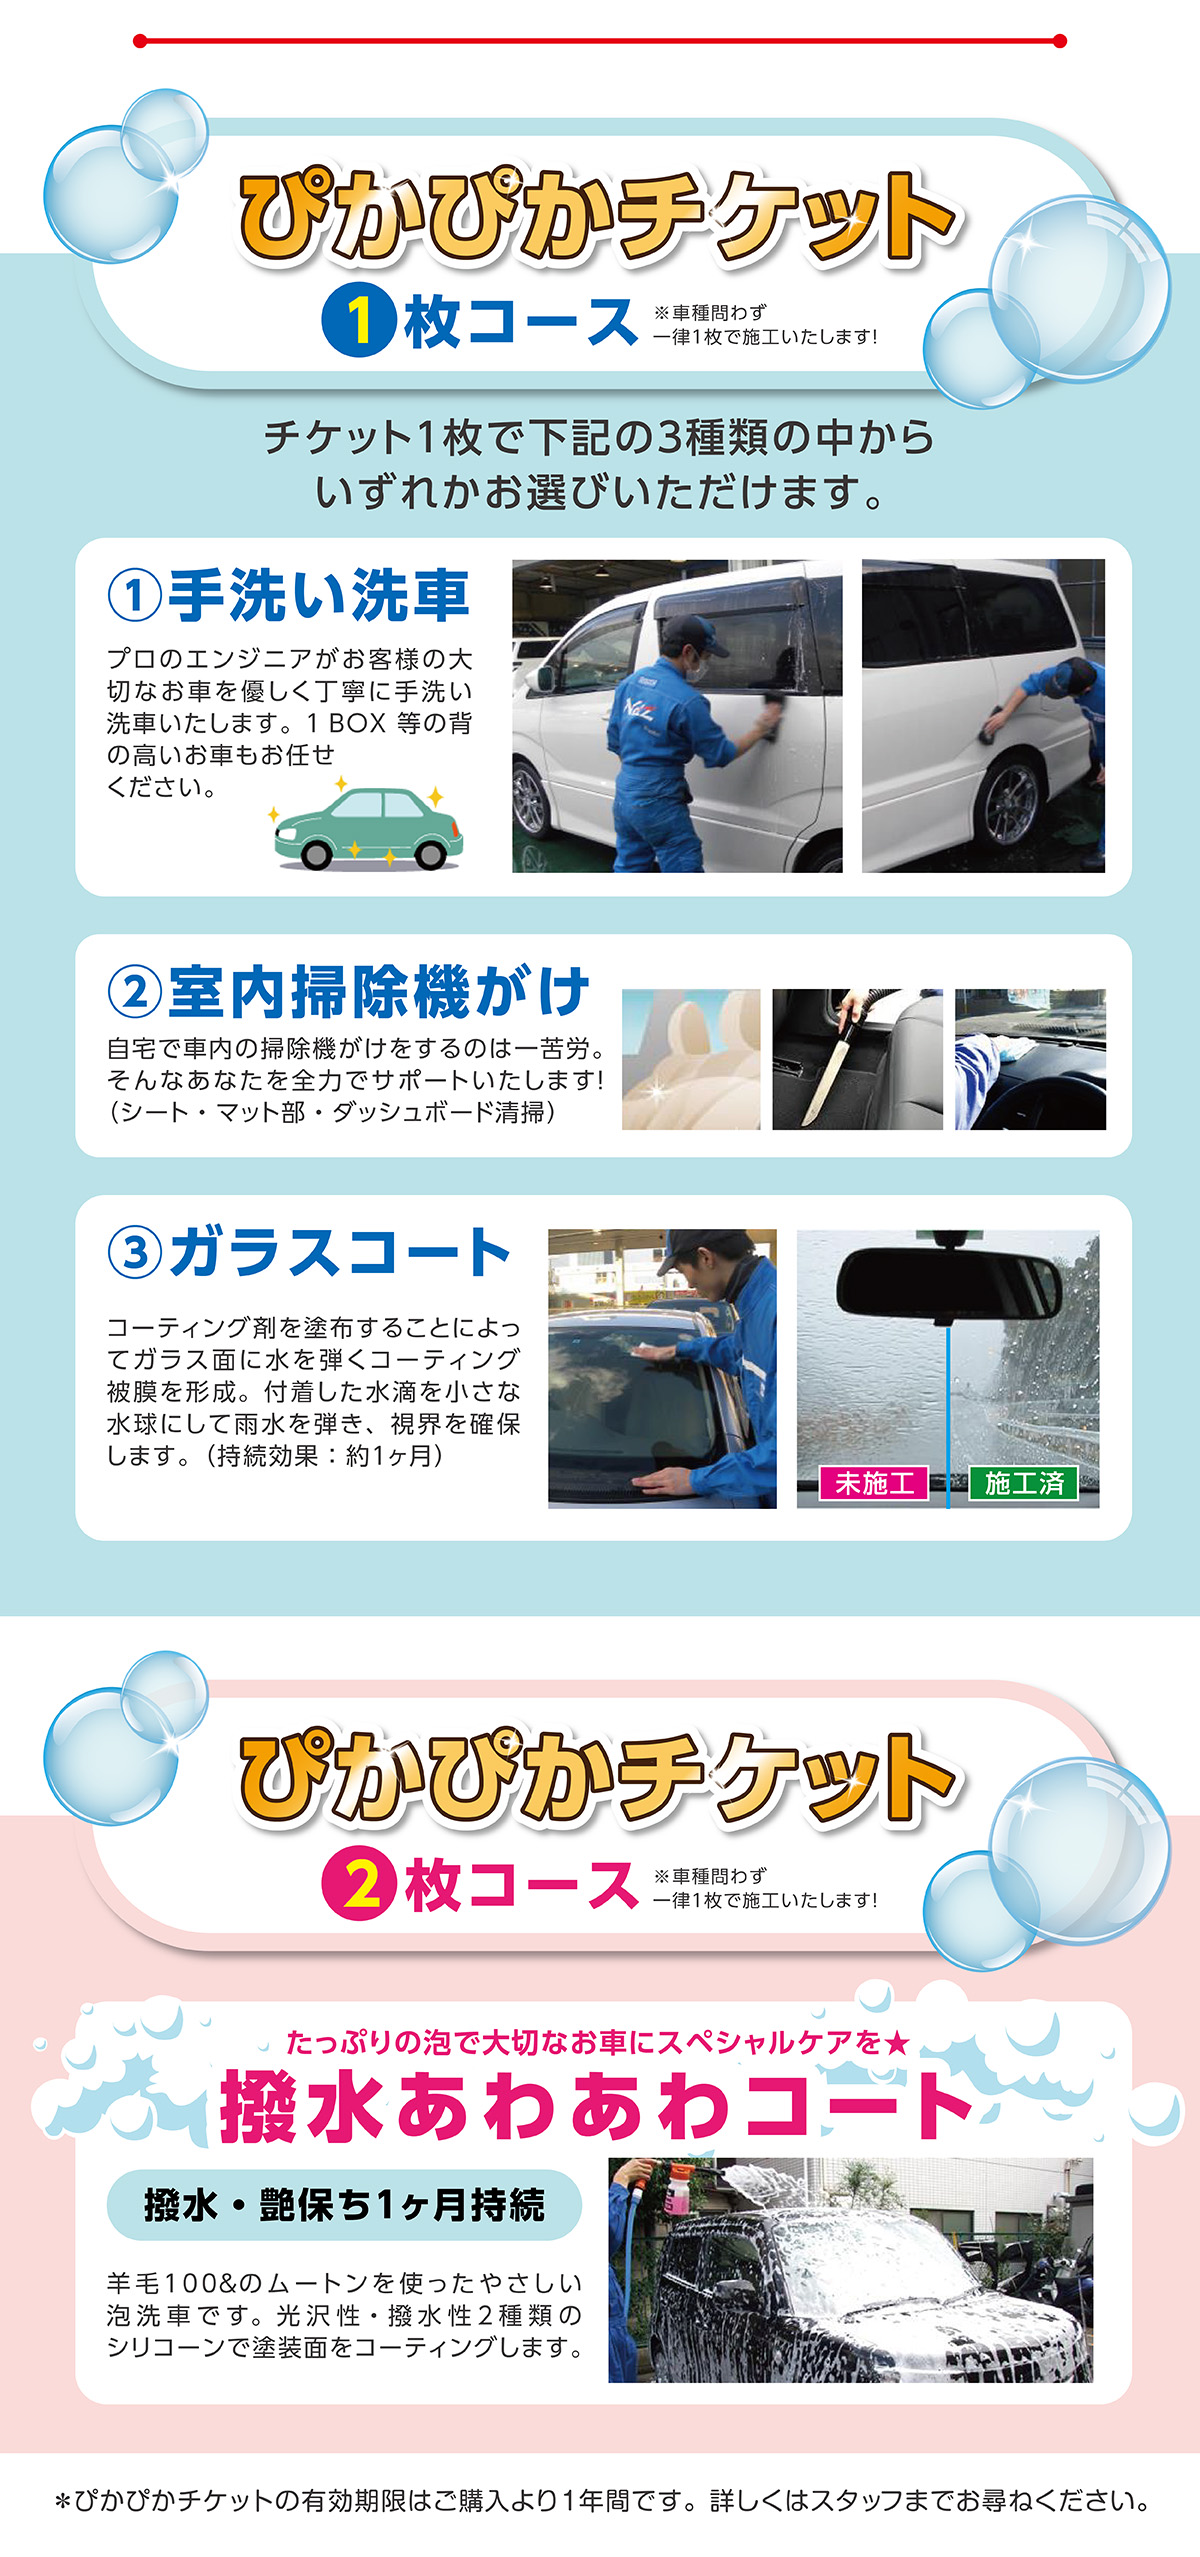 ぴかぴかチケット 洗車サービス ネッツトヨタ京都